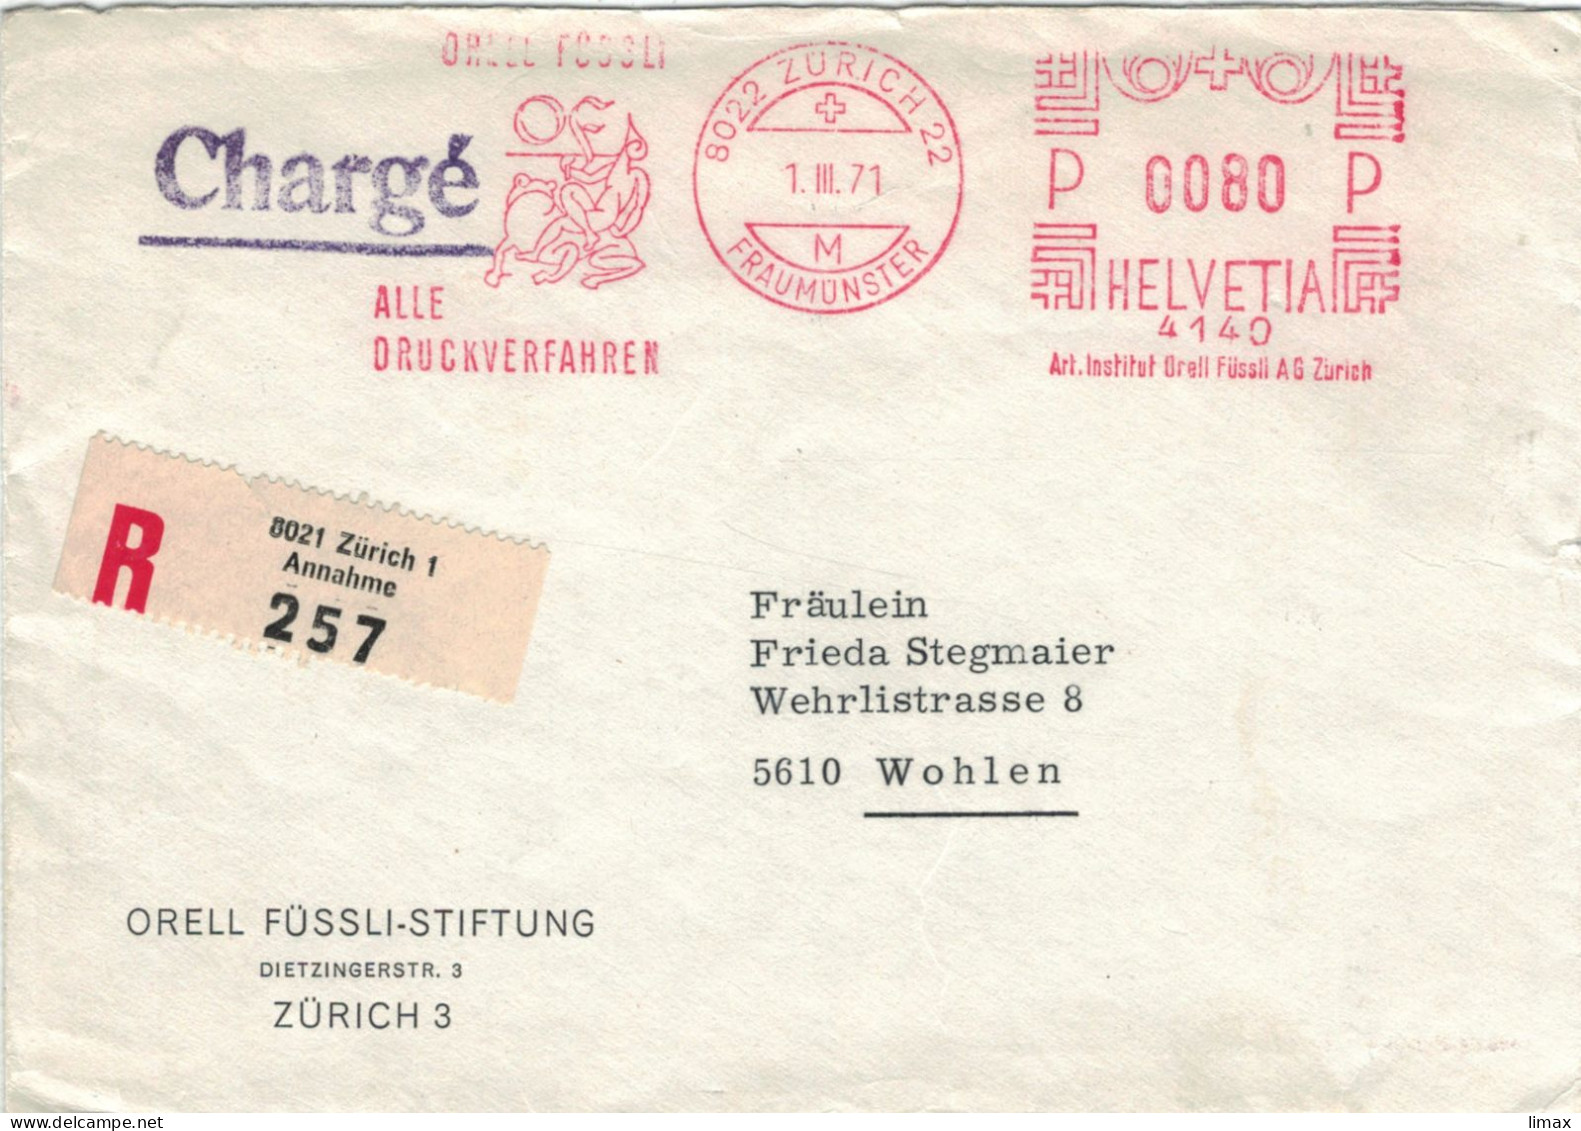 Orell Füssli Alle Druckverfahren 8022 Zürich Fraumünster 1971 No. 4140 - Frosch - Vgl. Froschauersche Druckerei - Affranchissements Mécaniques